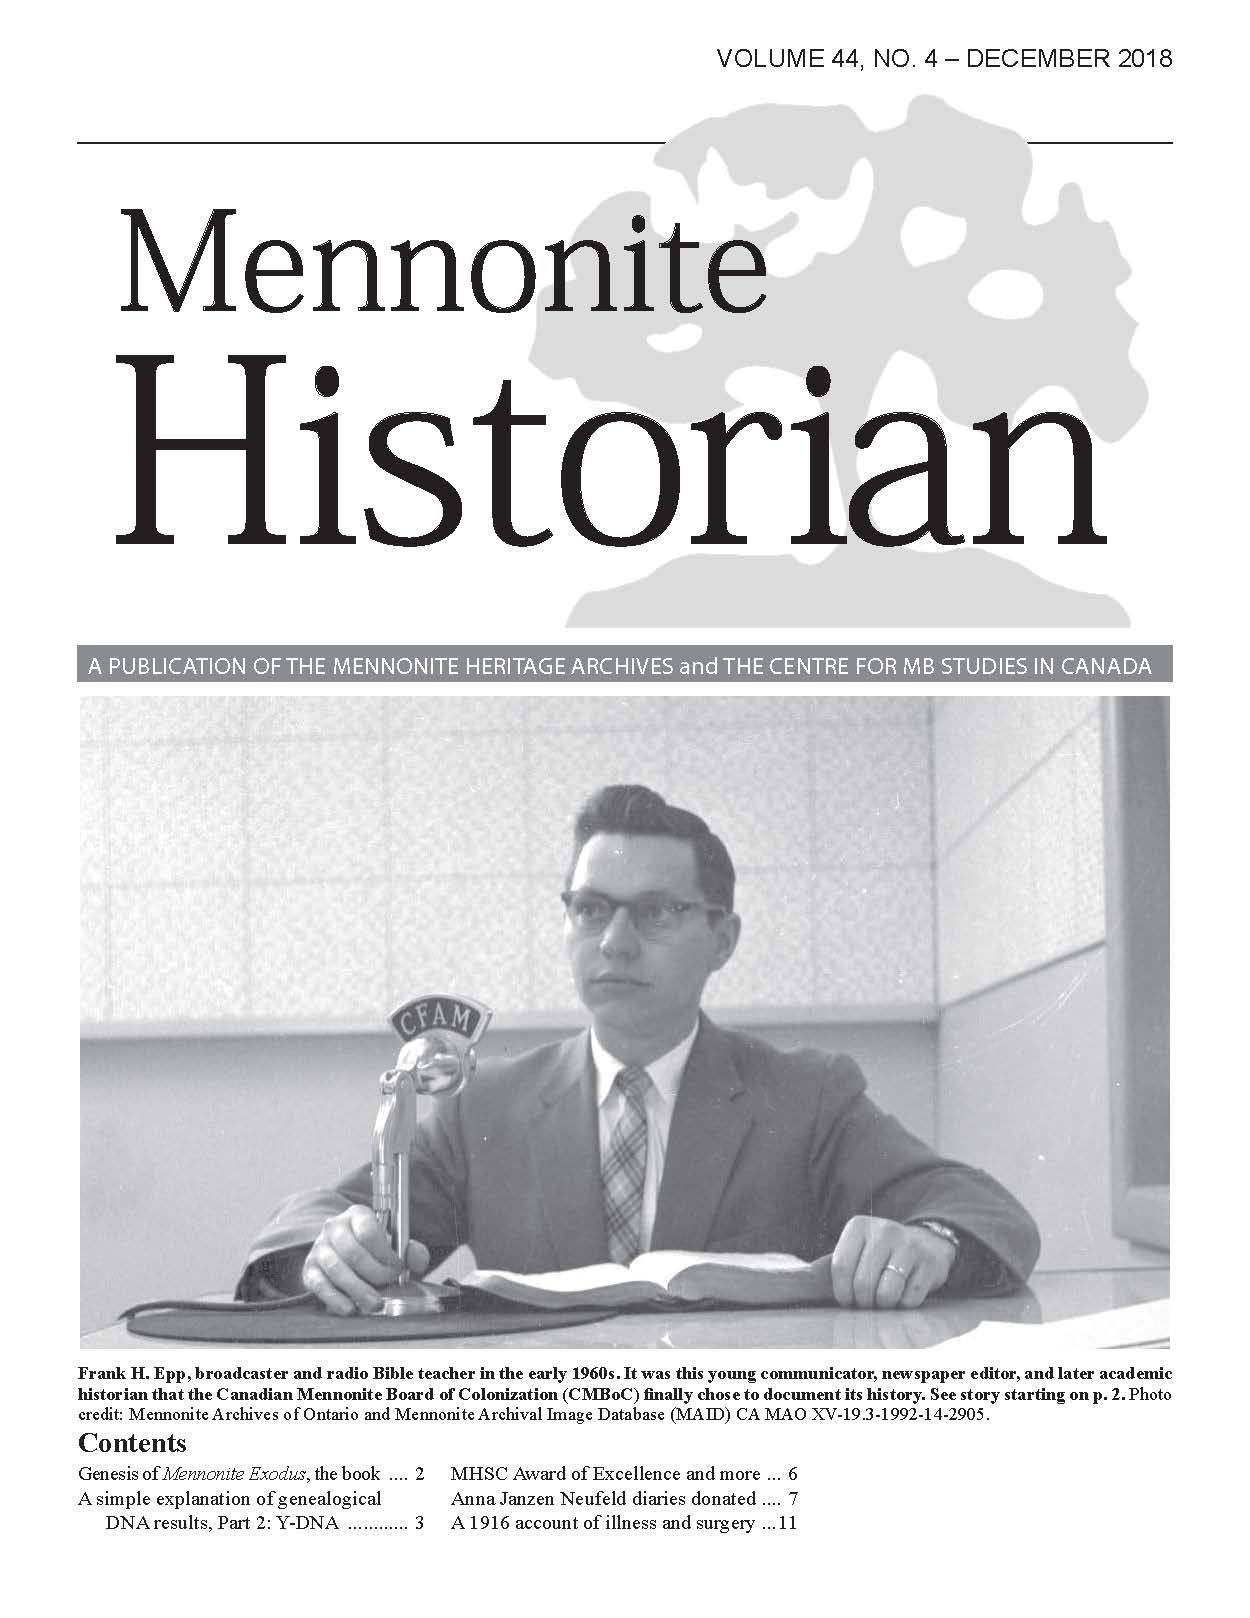 Mennonite Historian (December 2018)